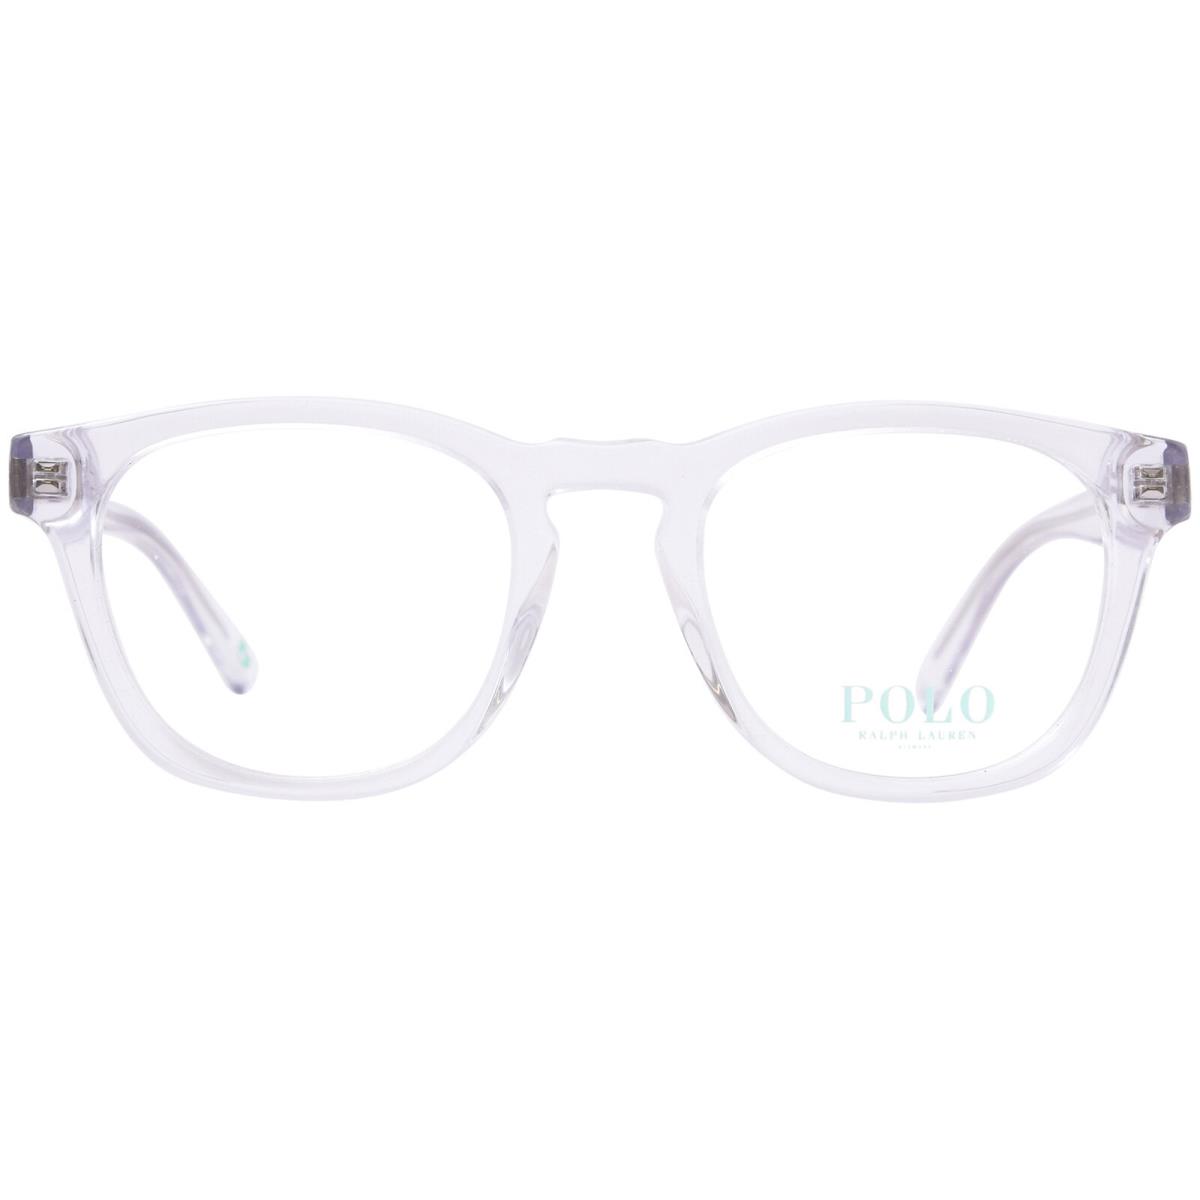 Polo Ralph Lauren PH2258 5331 Eyeglasses Men`s Shiny Crystal Full Rim 49mm - Frame: Clear